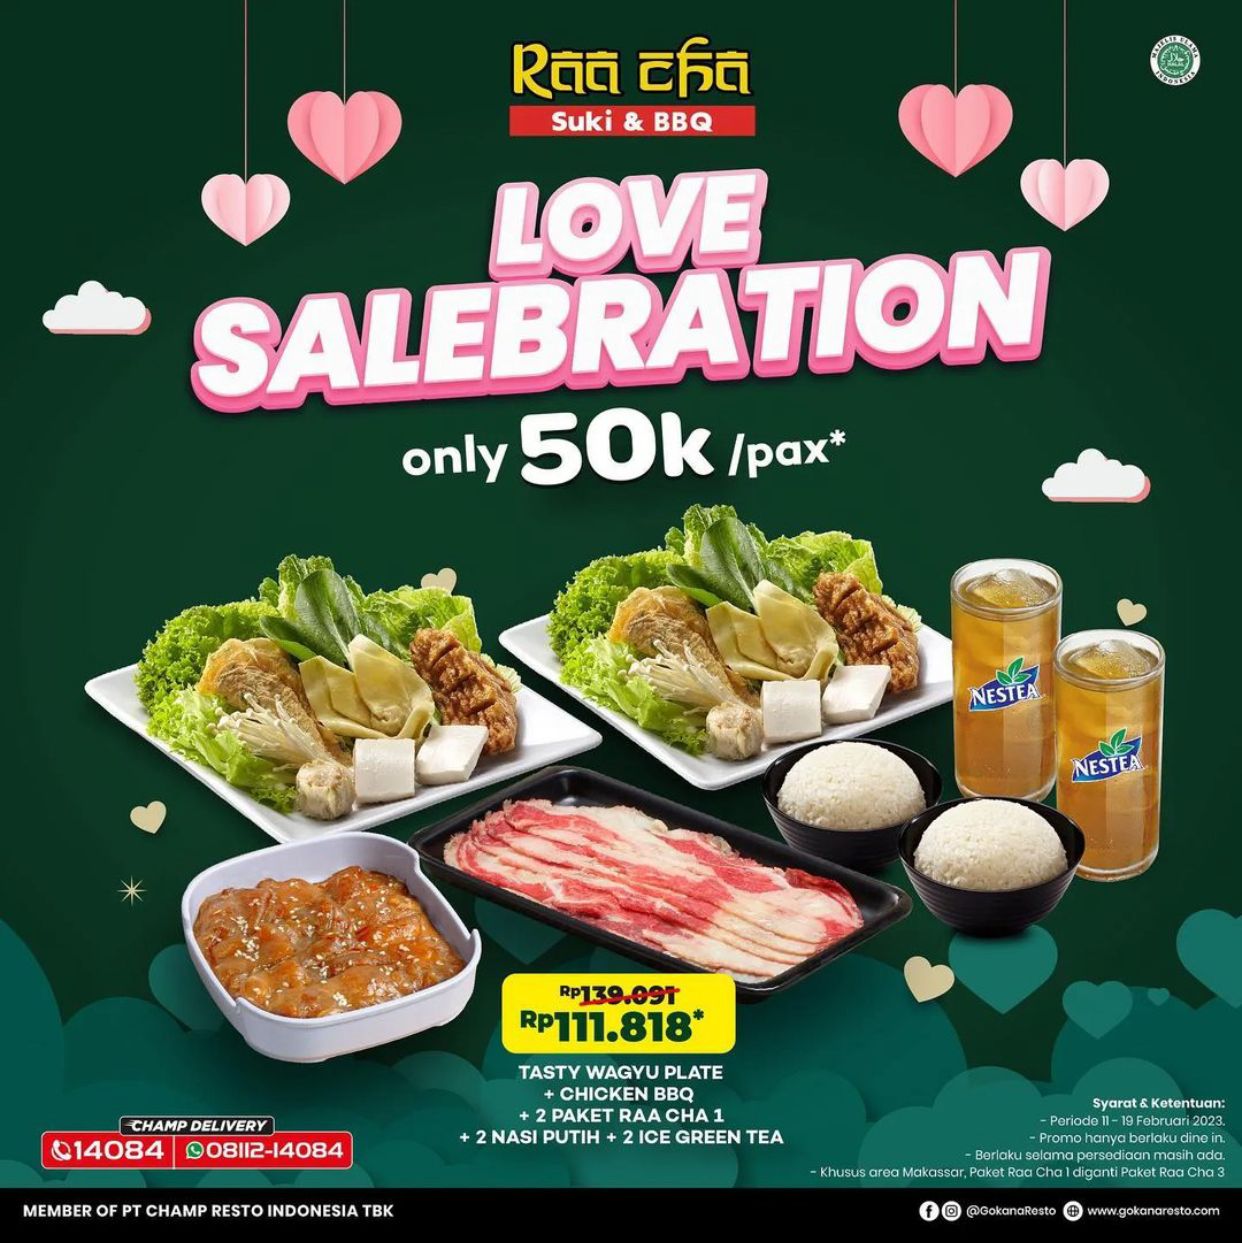 Promo Raacha Suki & BBQ 100K Bisa Makan Buat Berdua!